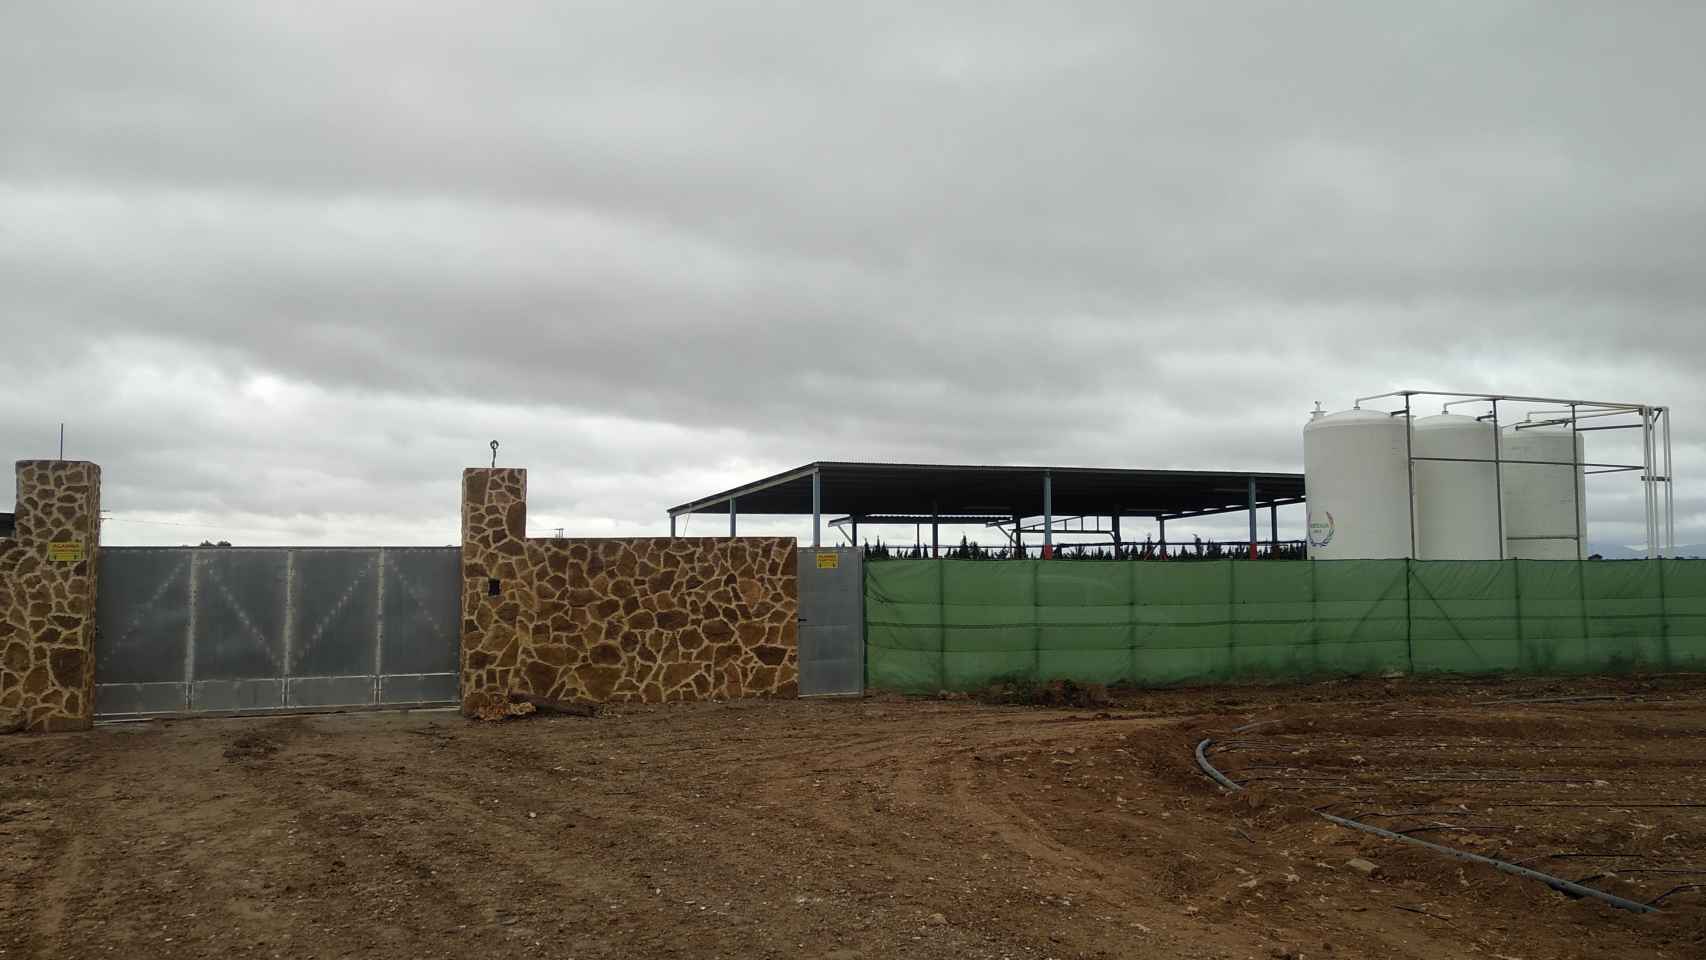 Imagen de las instalaciones de la empresa dedicada a la comercialización de abono ecológico que regenta José María en una finca agrícola situada a las afueras de Roldán.